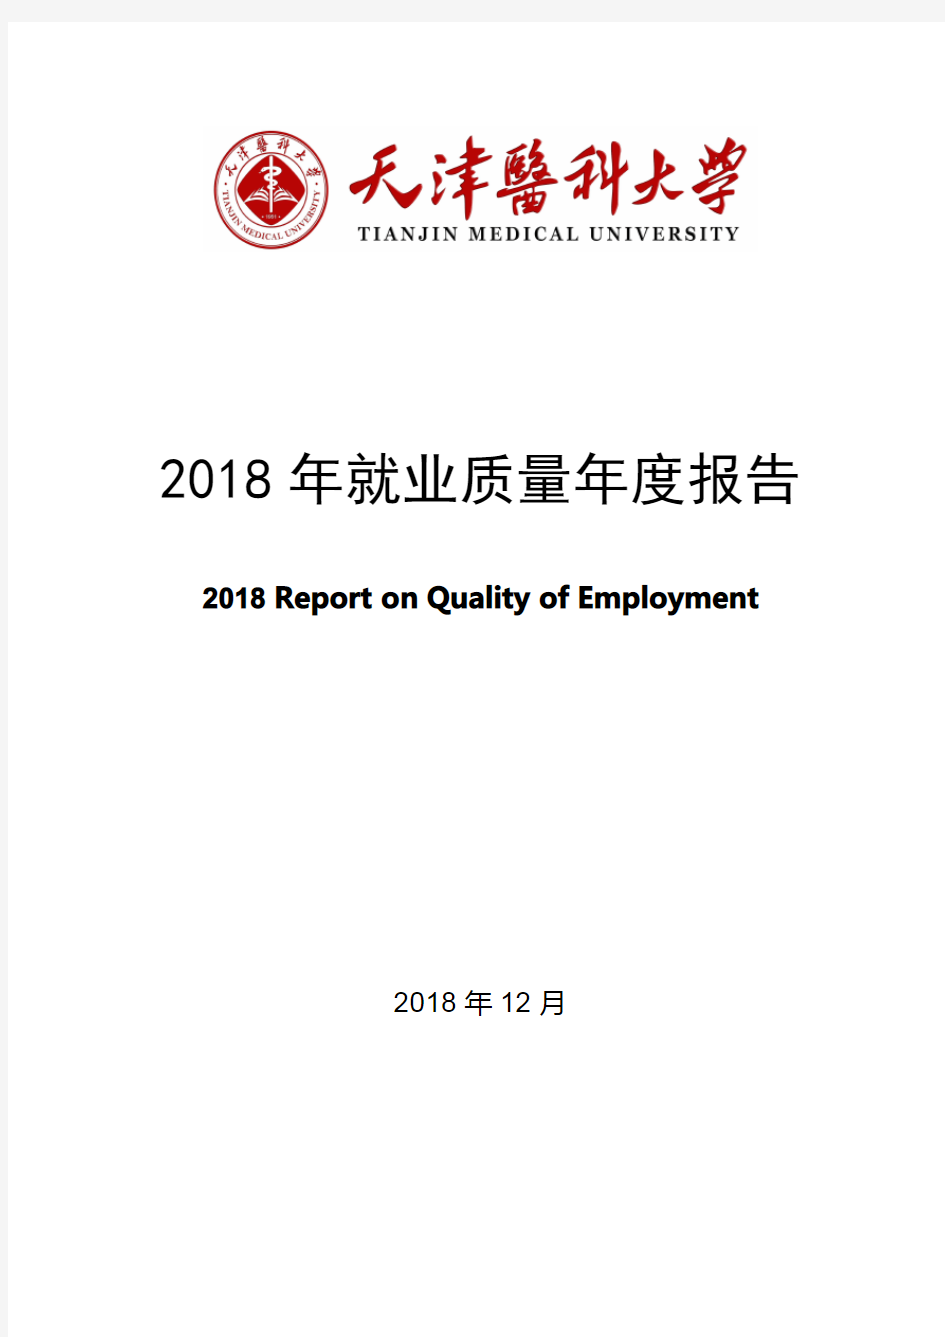 天津医科大学2018年就业质量报告